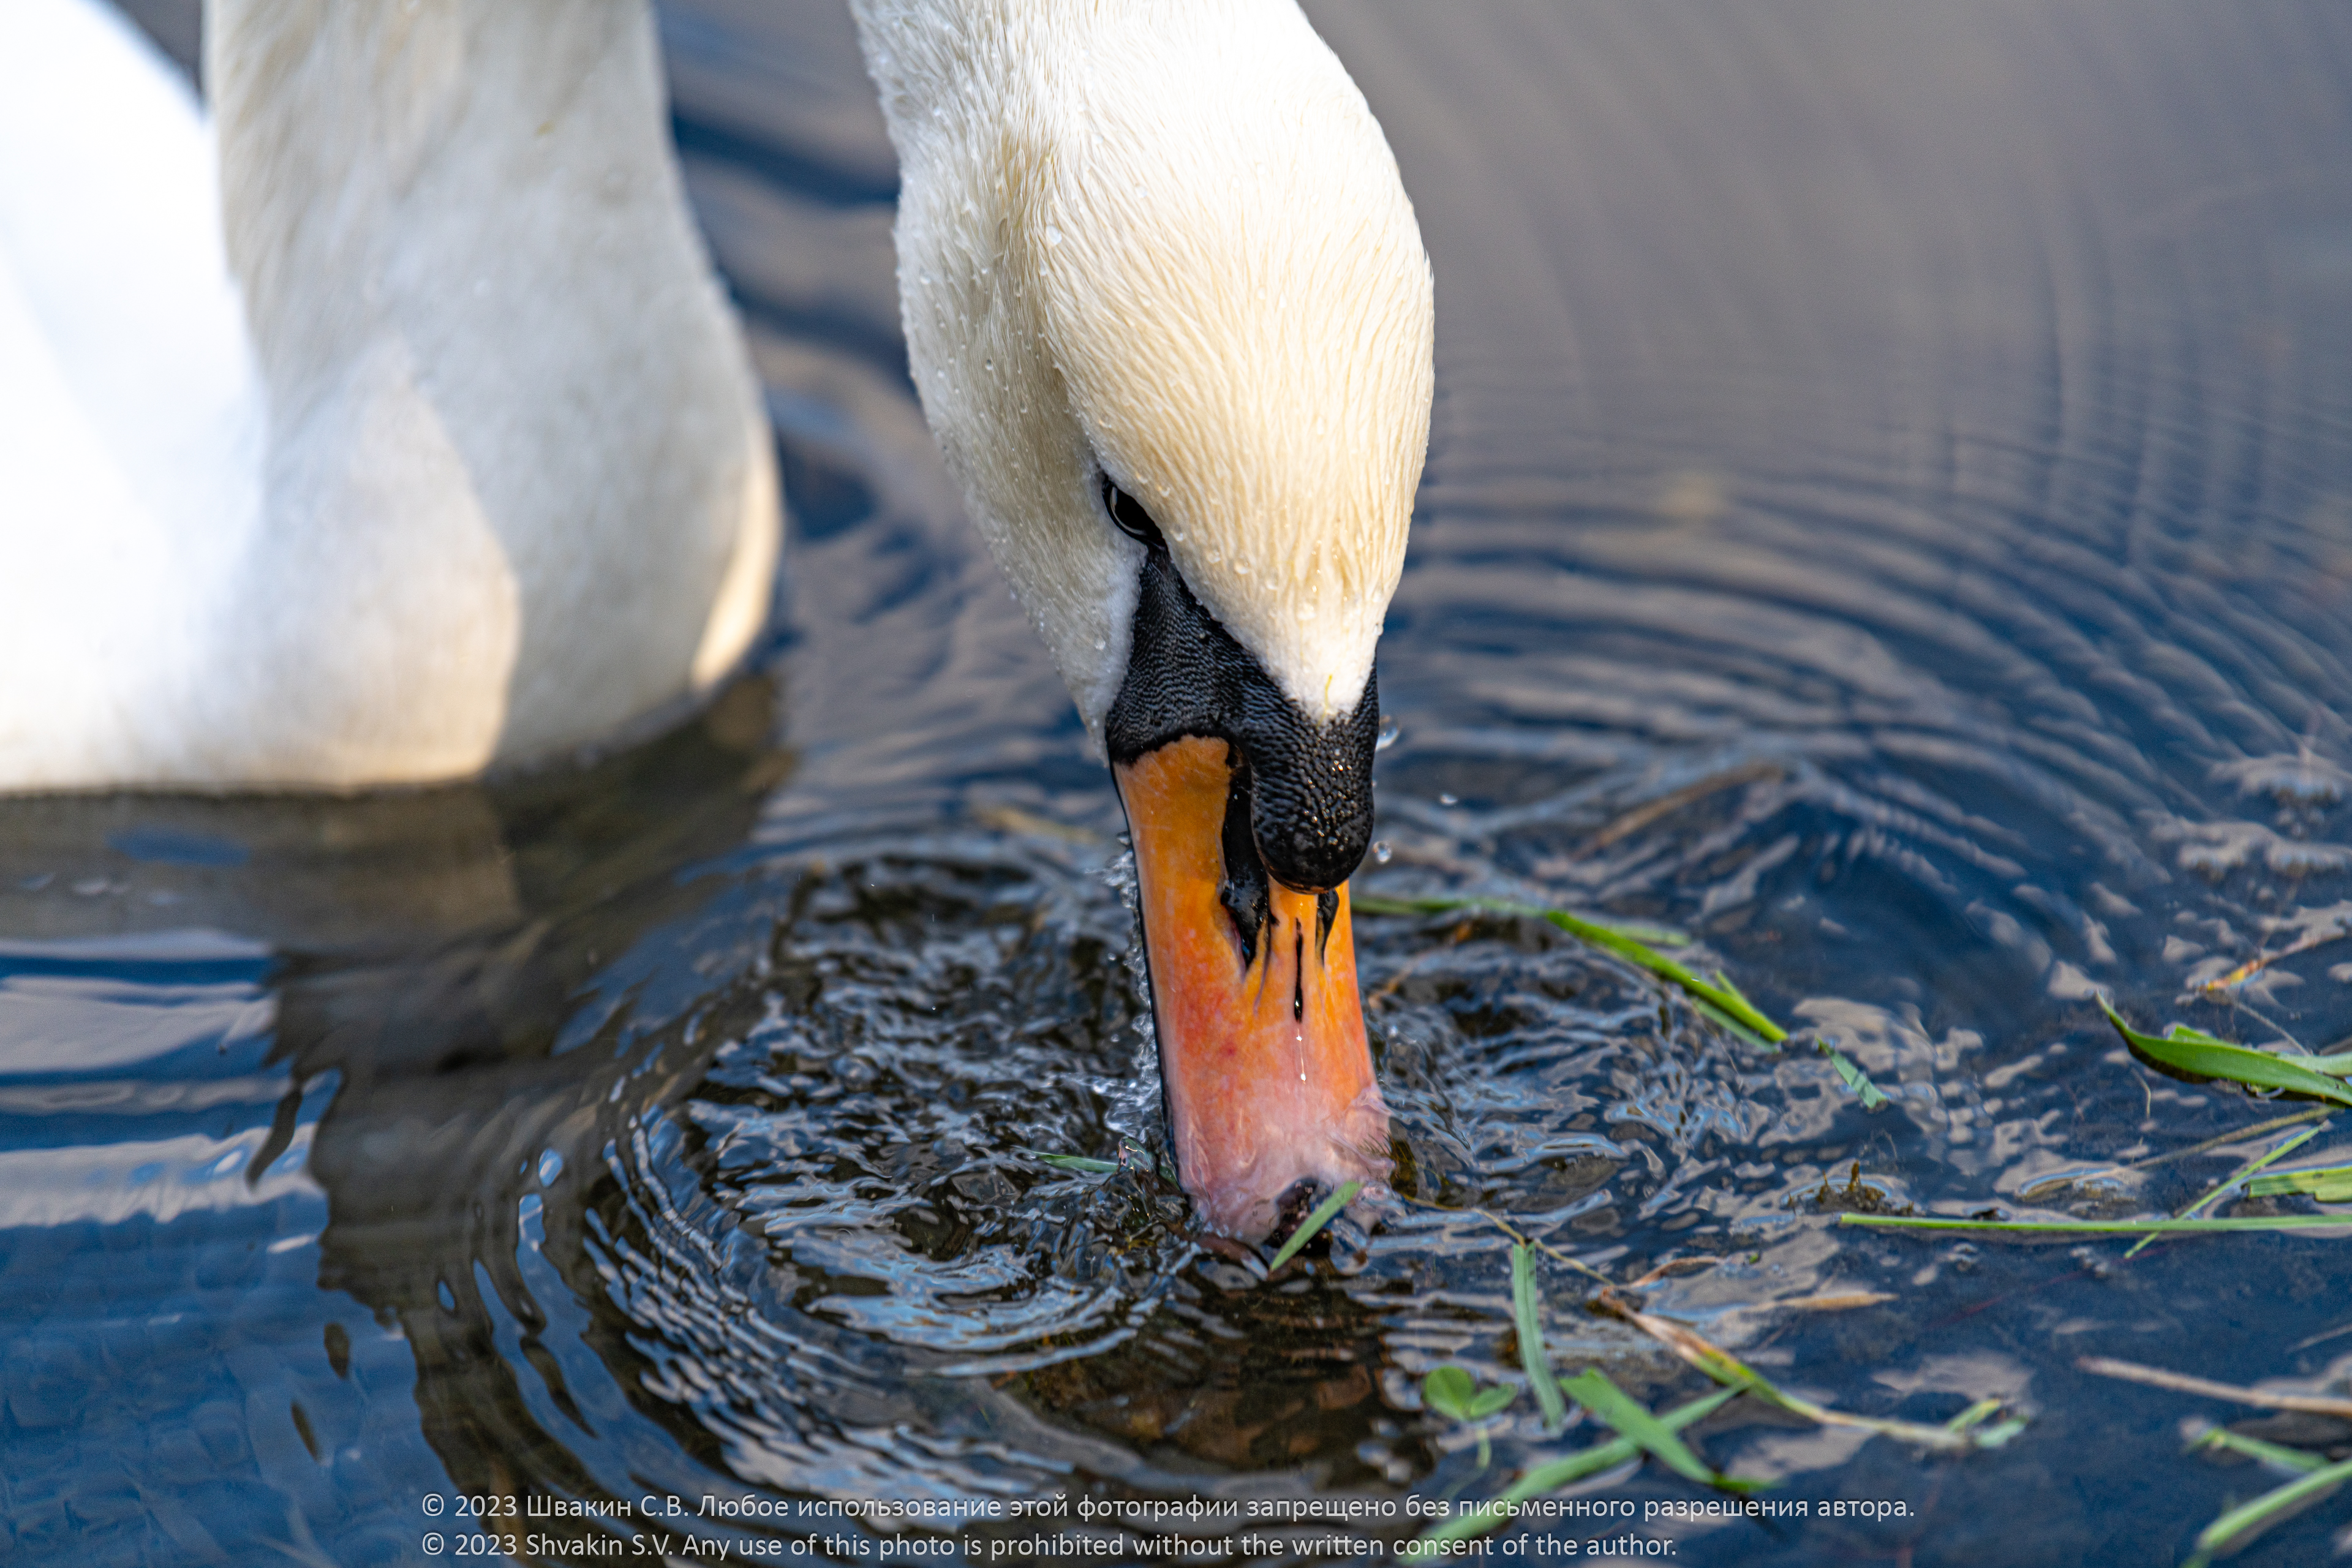 Swans of the Golden Pond of Sokolniki Park